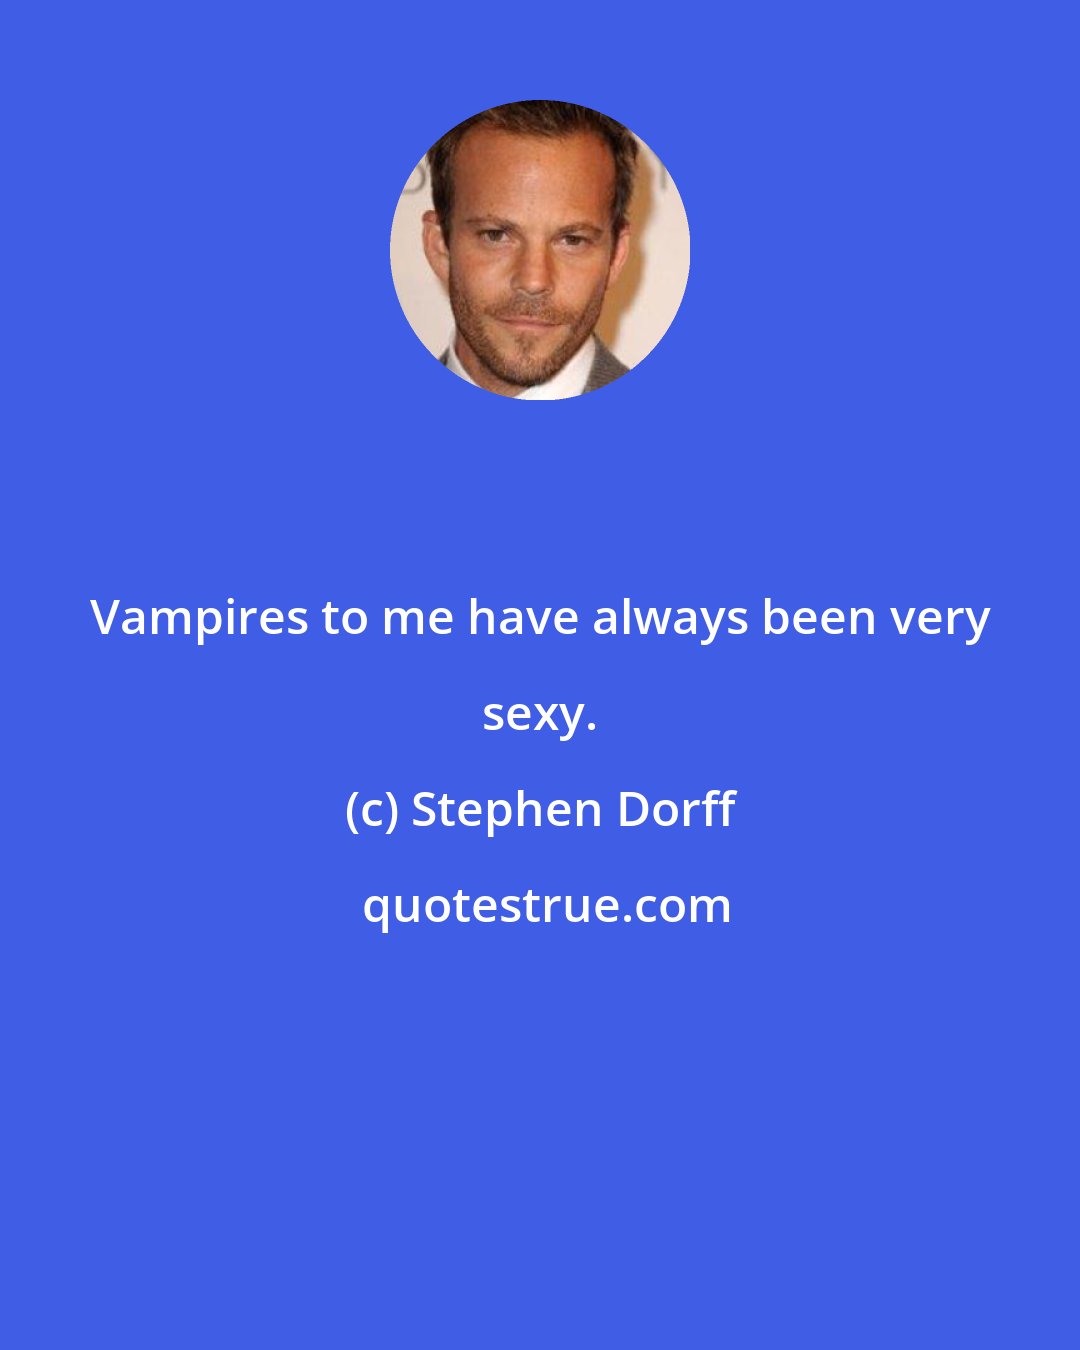 Stephen Dorff: Vampires to me have always been very sexy.